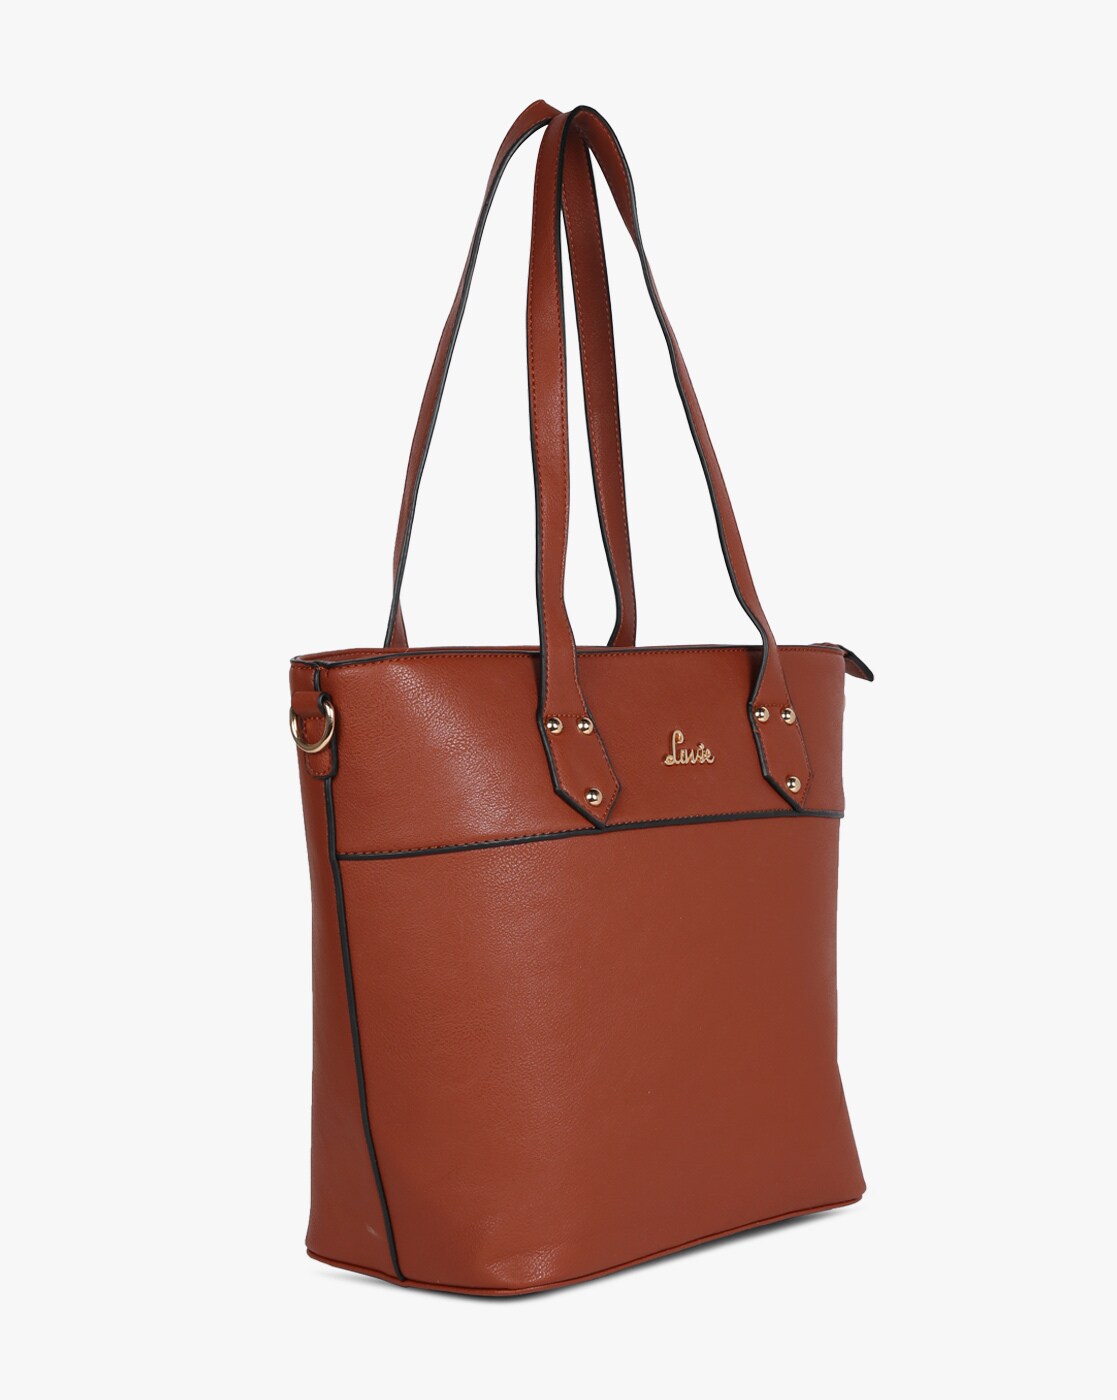 Lavie: Handbags Of The Moment | Grazia Most Loved Brands | Grazia India